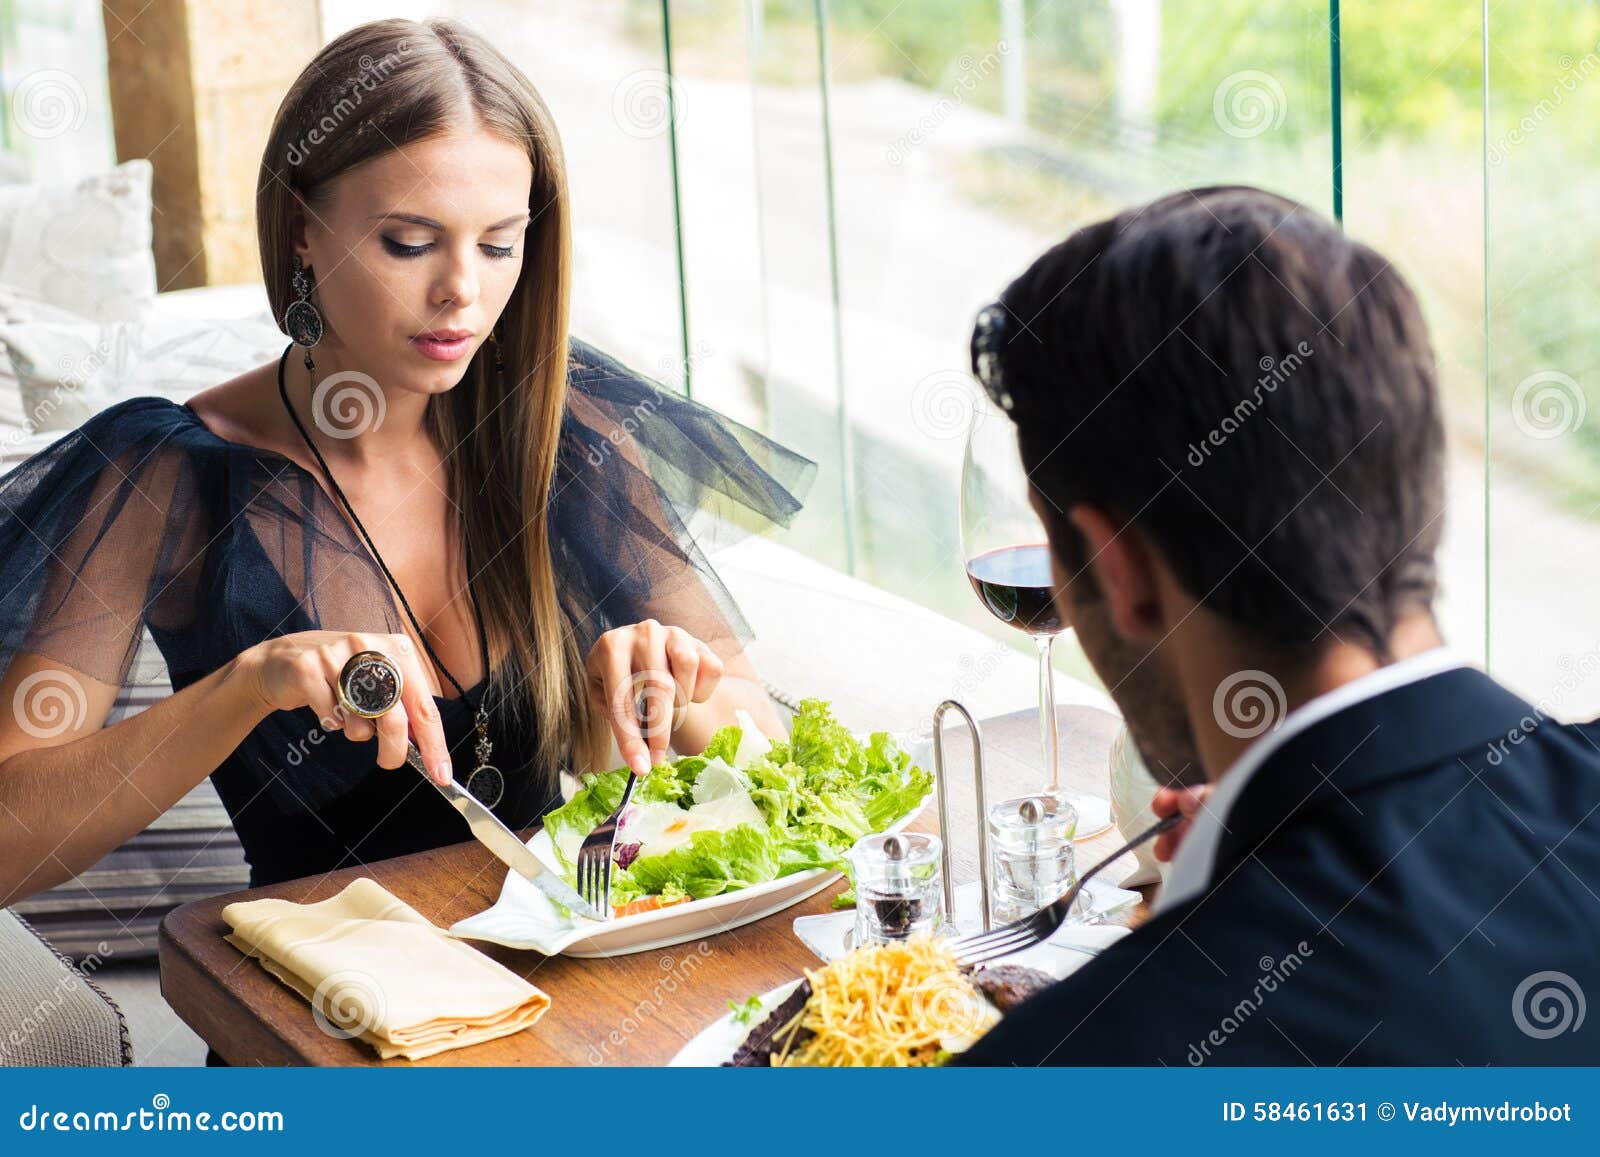 Изыскана речь. Девушка ужинает в ресторане. Парень и девушка в ресторане. Мужчина и женщина в ресторане. Женщина в ресторане за столом.